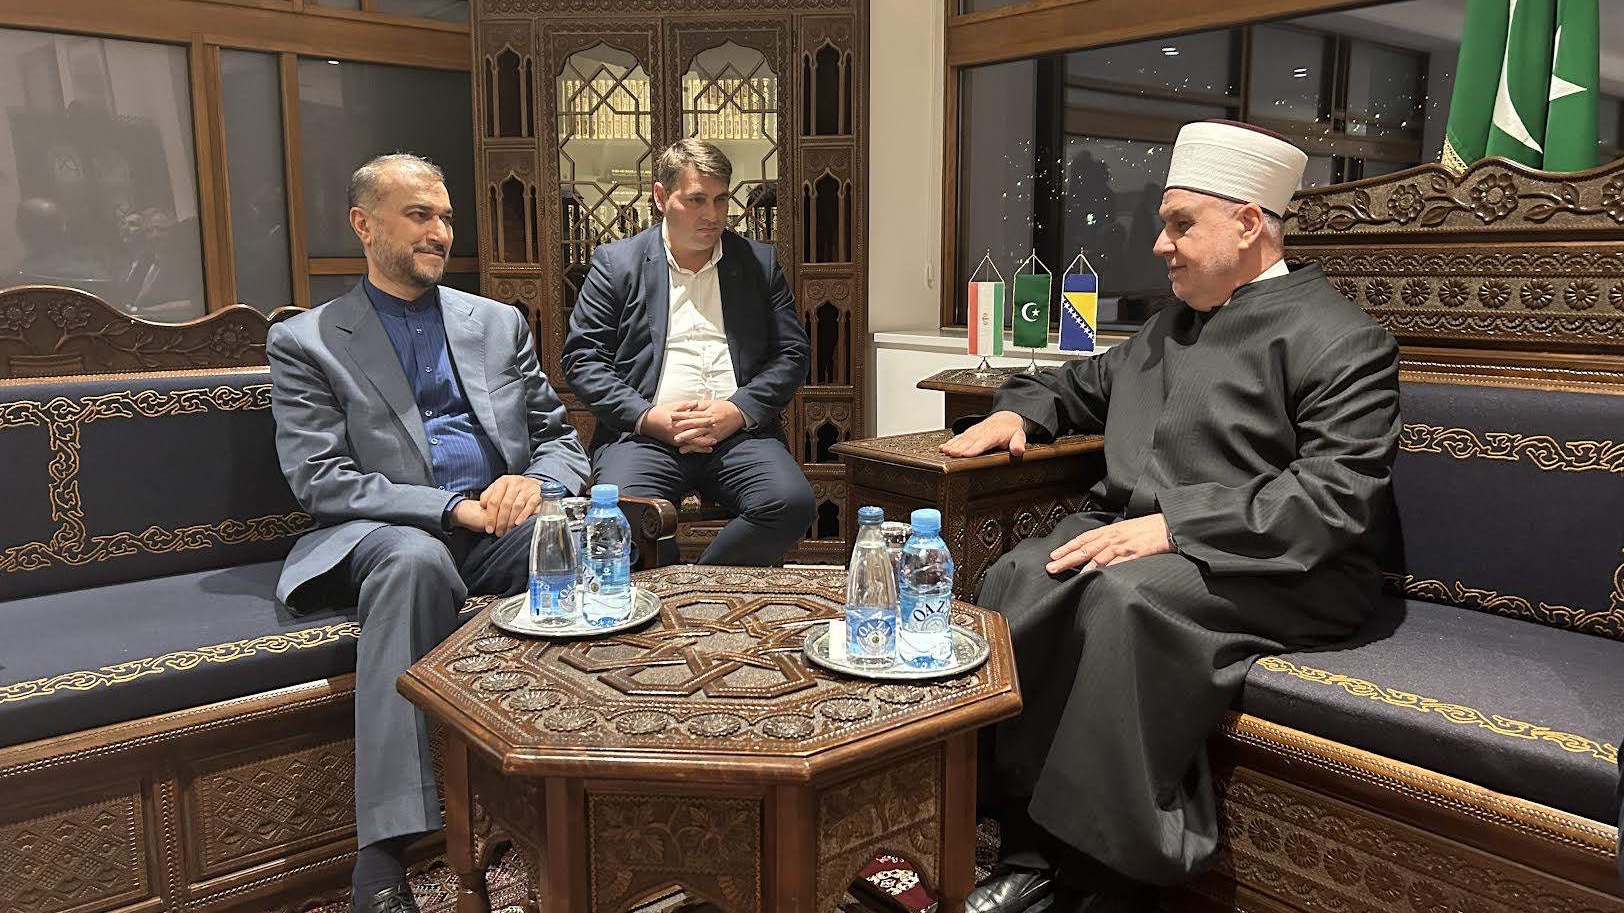 Reisul-ulema se susreo s iranskim ministrom